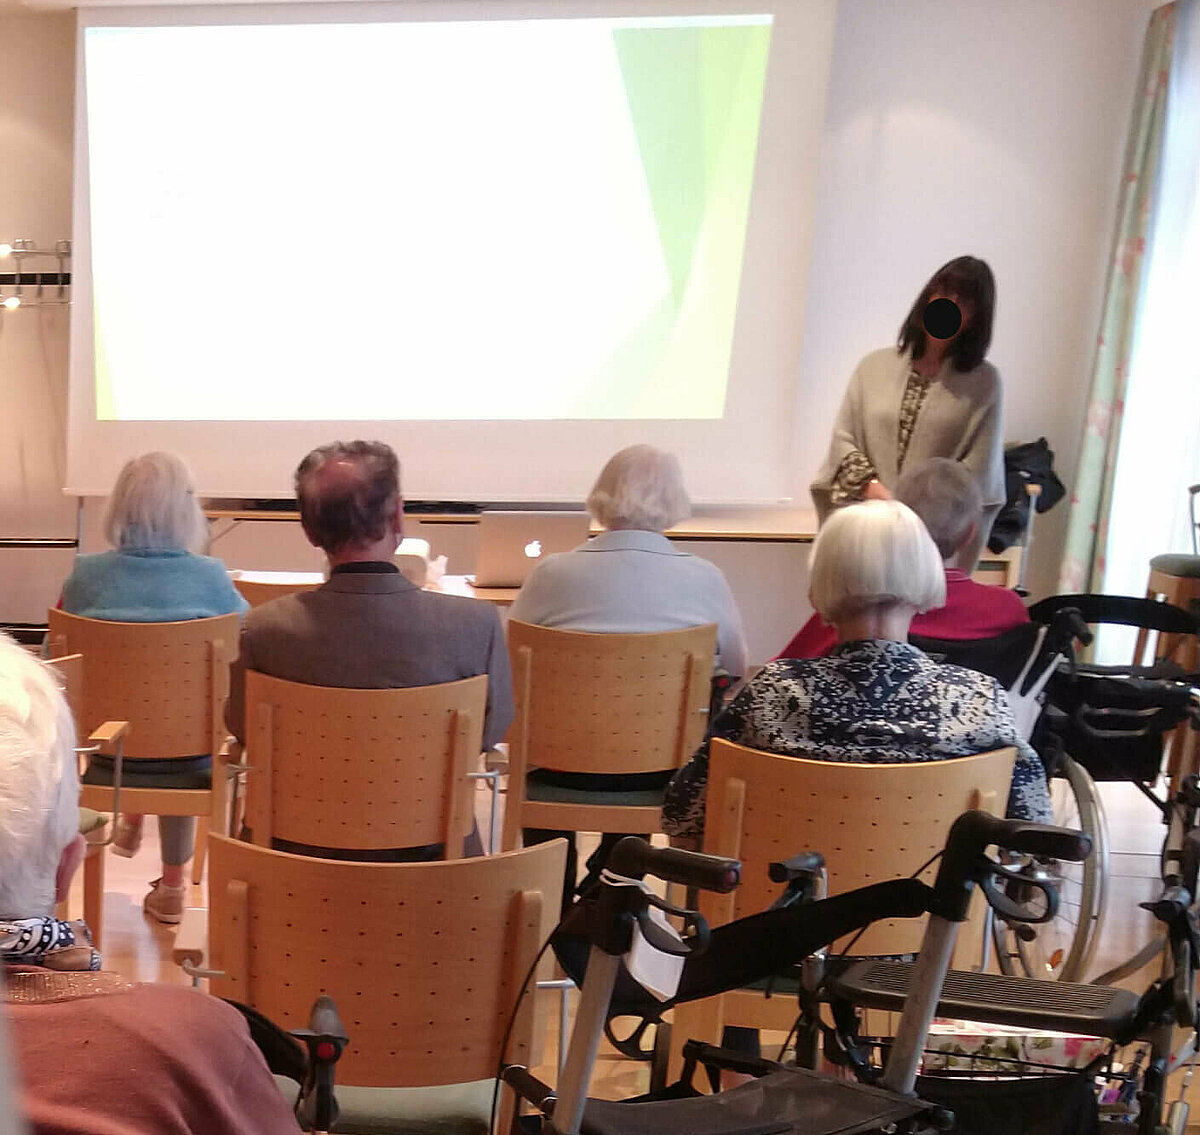 Vortrag über das Immunsystem in der Senioren-Residenz "Elisa" in Ingolstadt